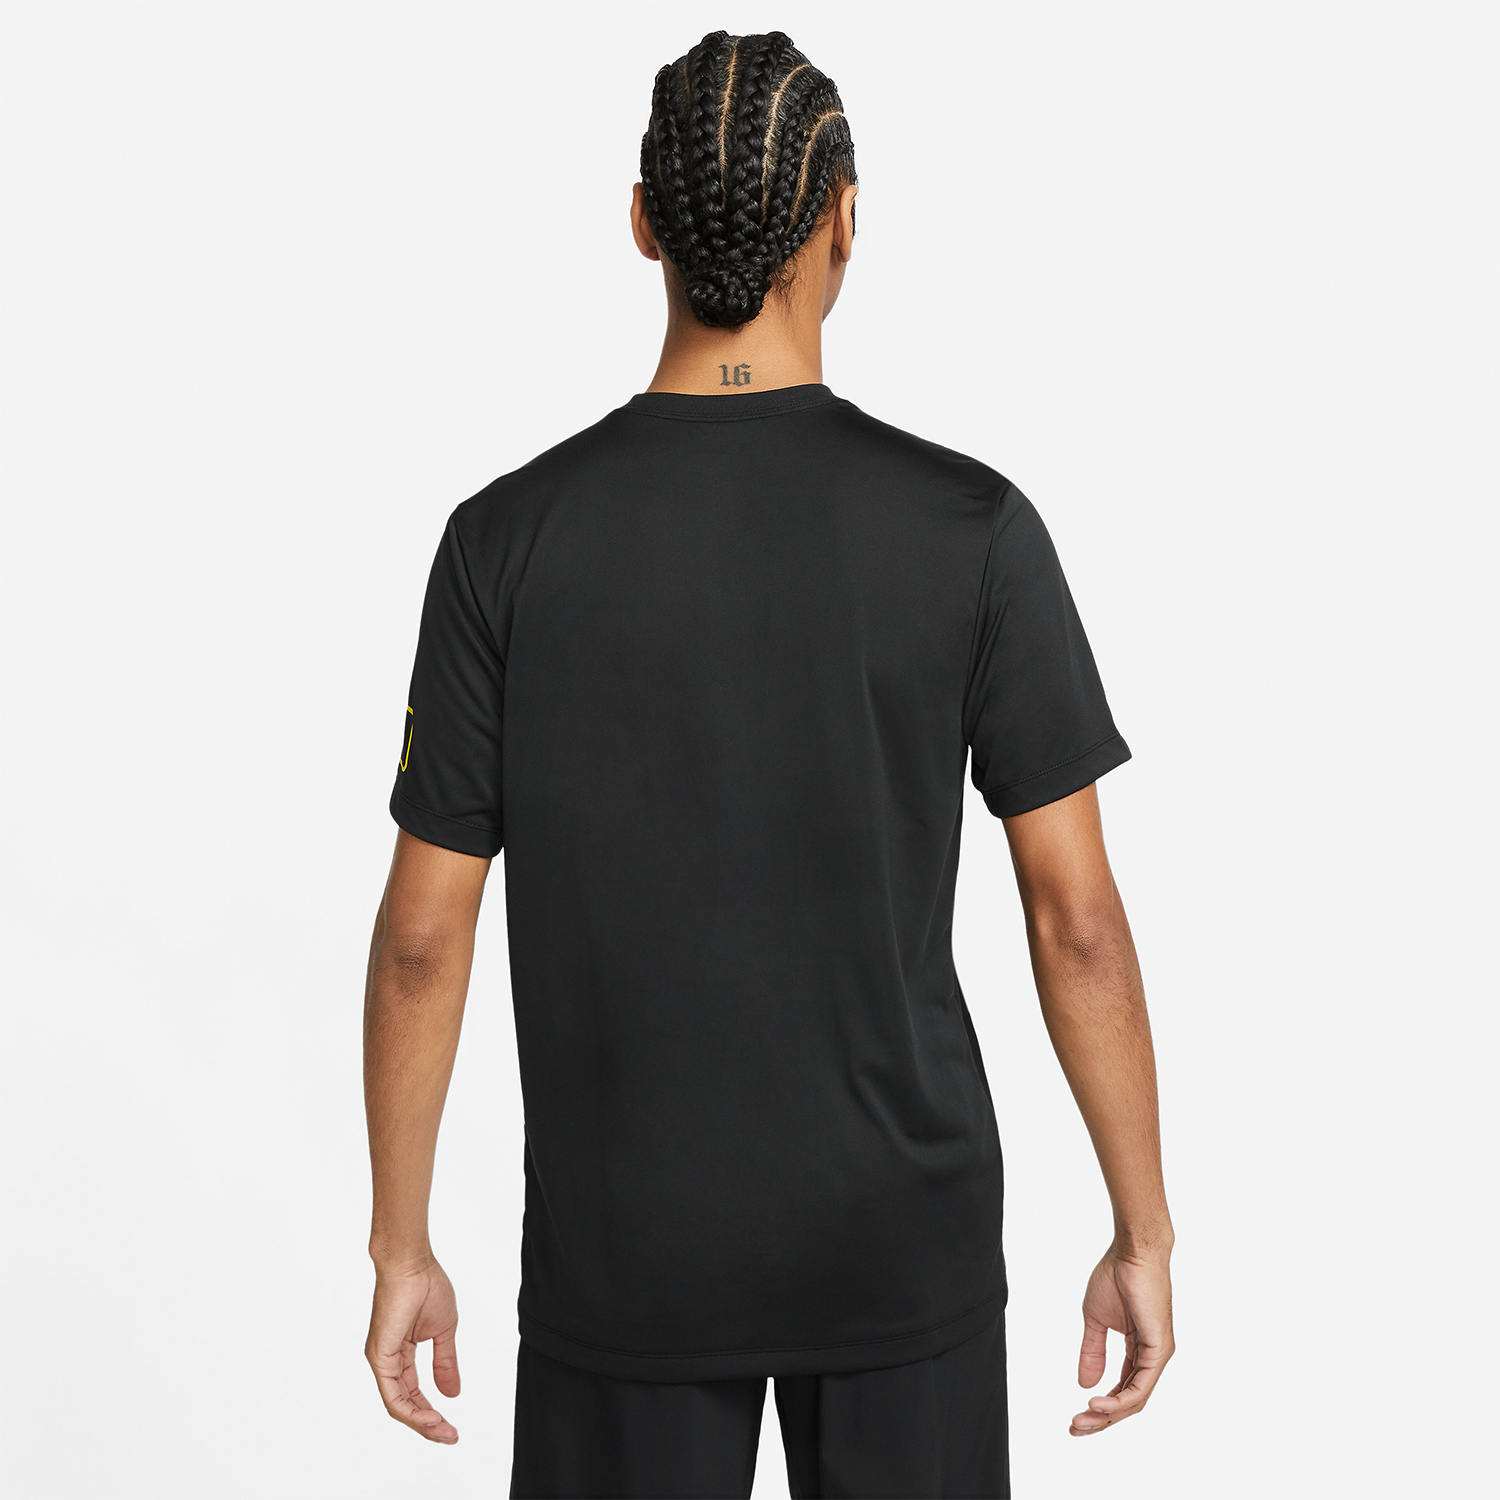 Nike Dri-FIT Body Shop Men's Training T-Shirt - Black